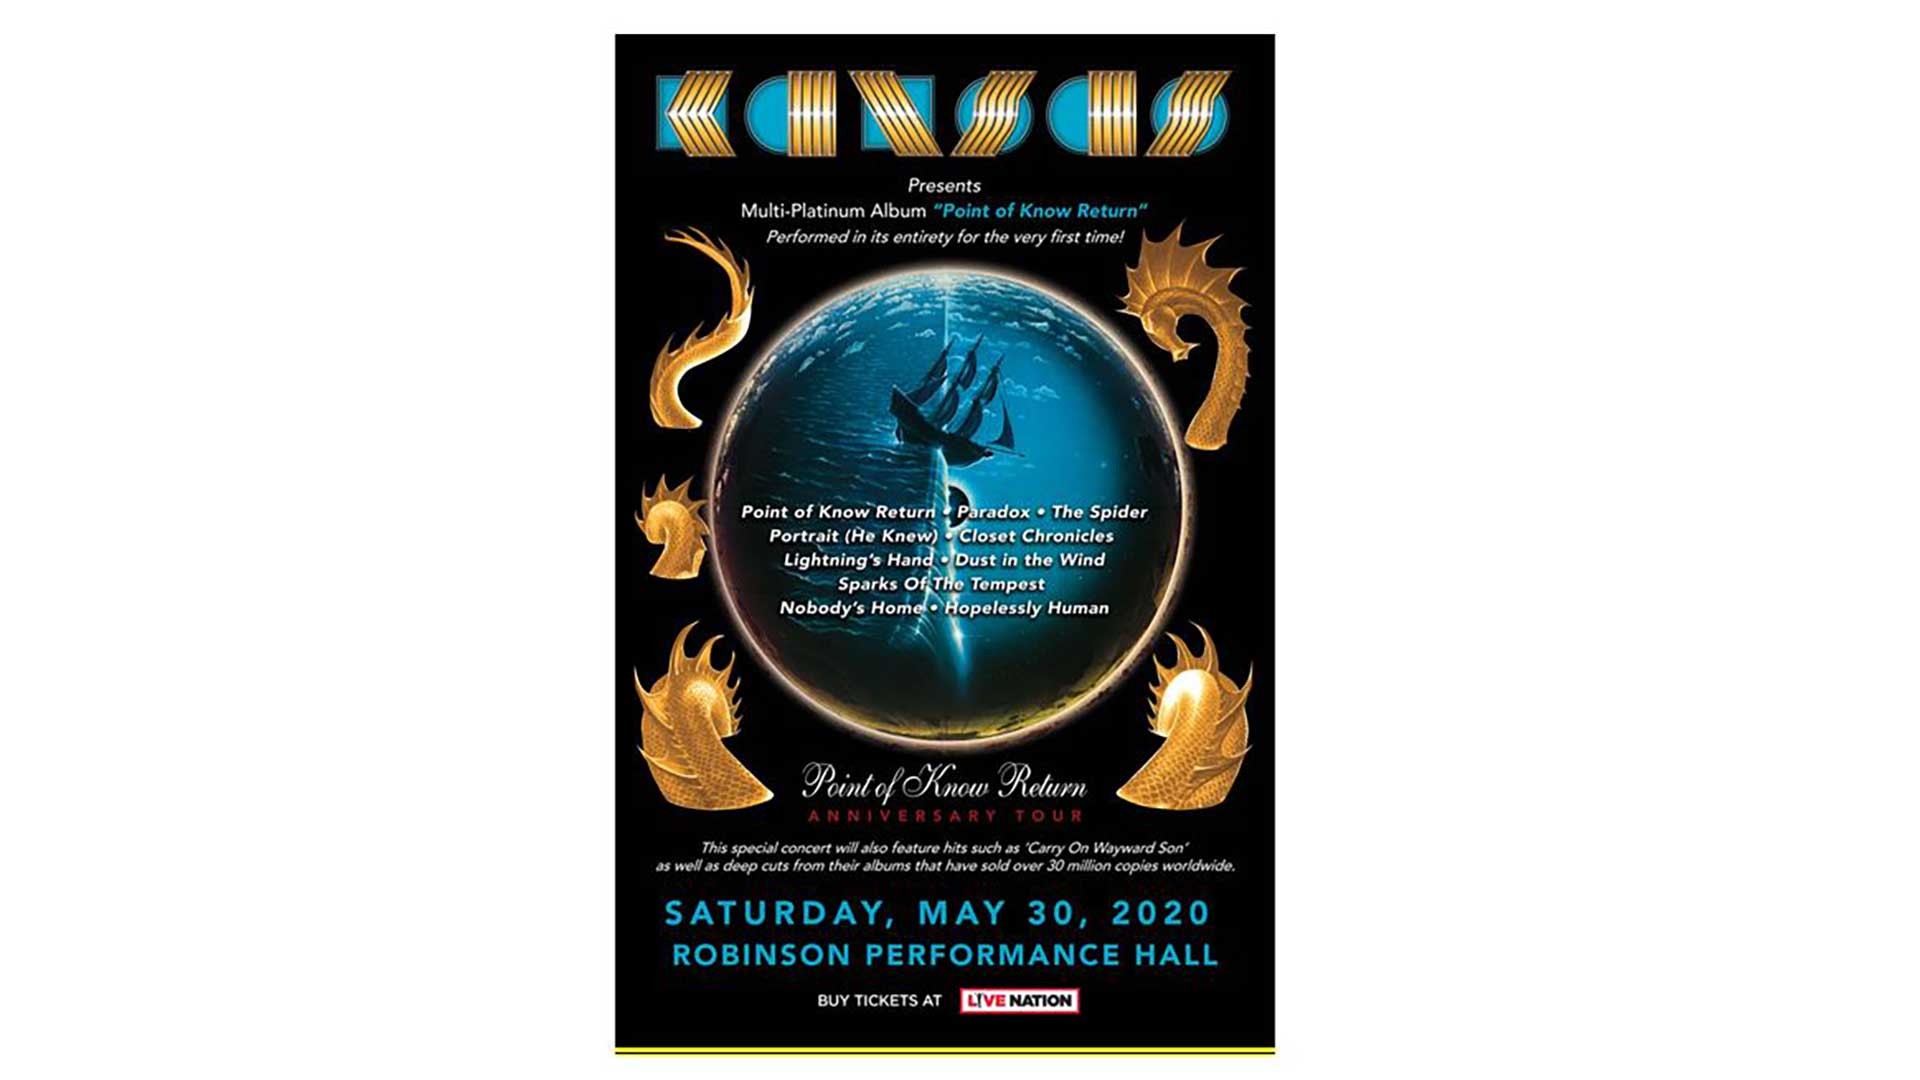 Rock band Kansas brings anniversary tour to Arkansas in May 2020